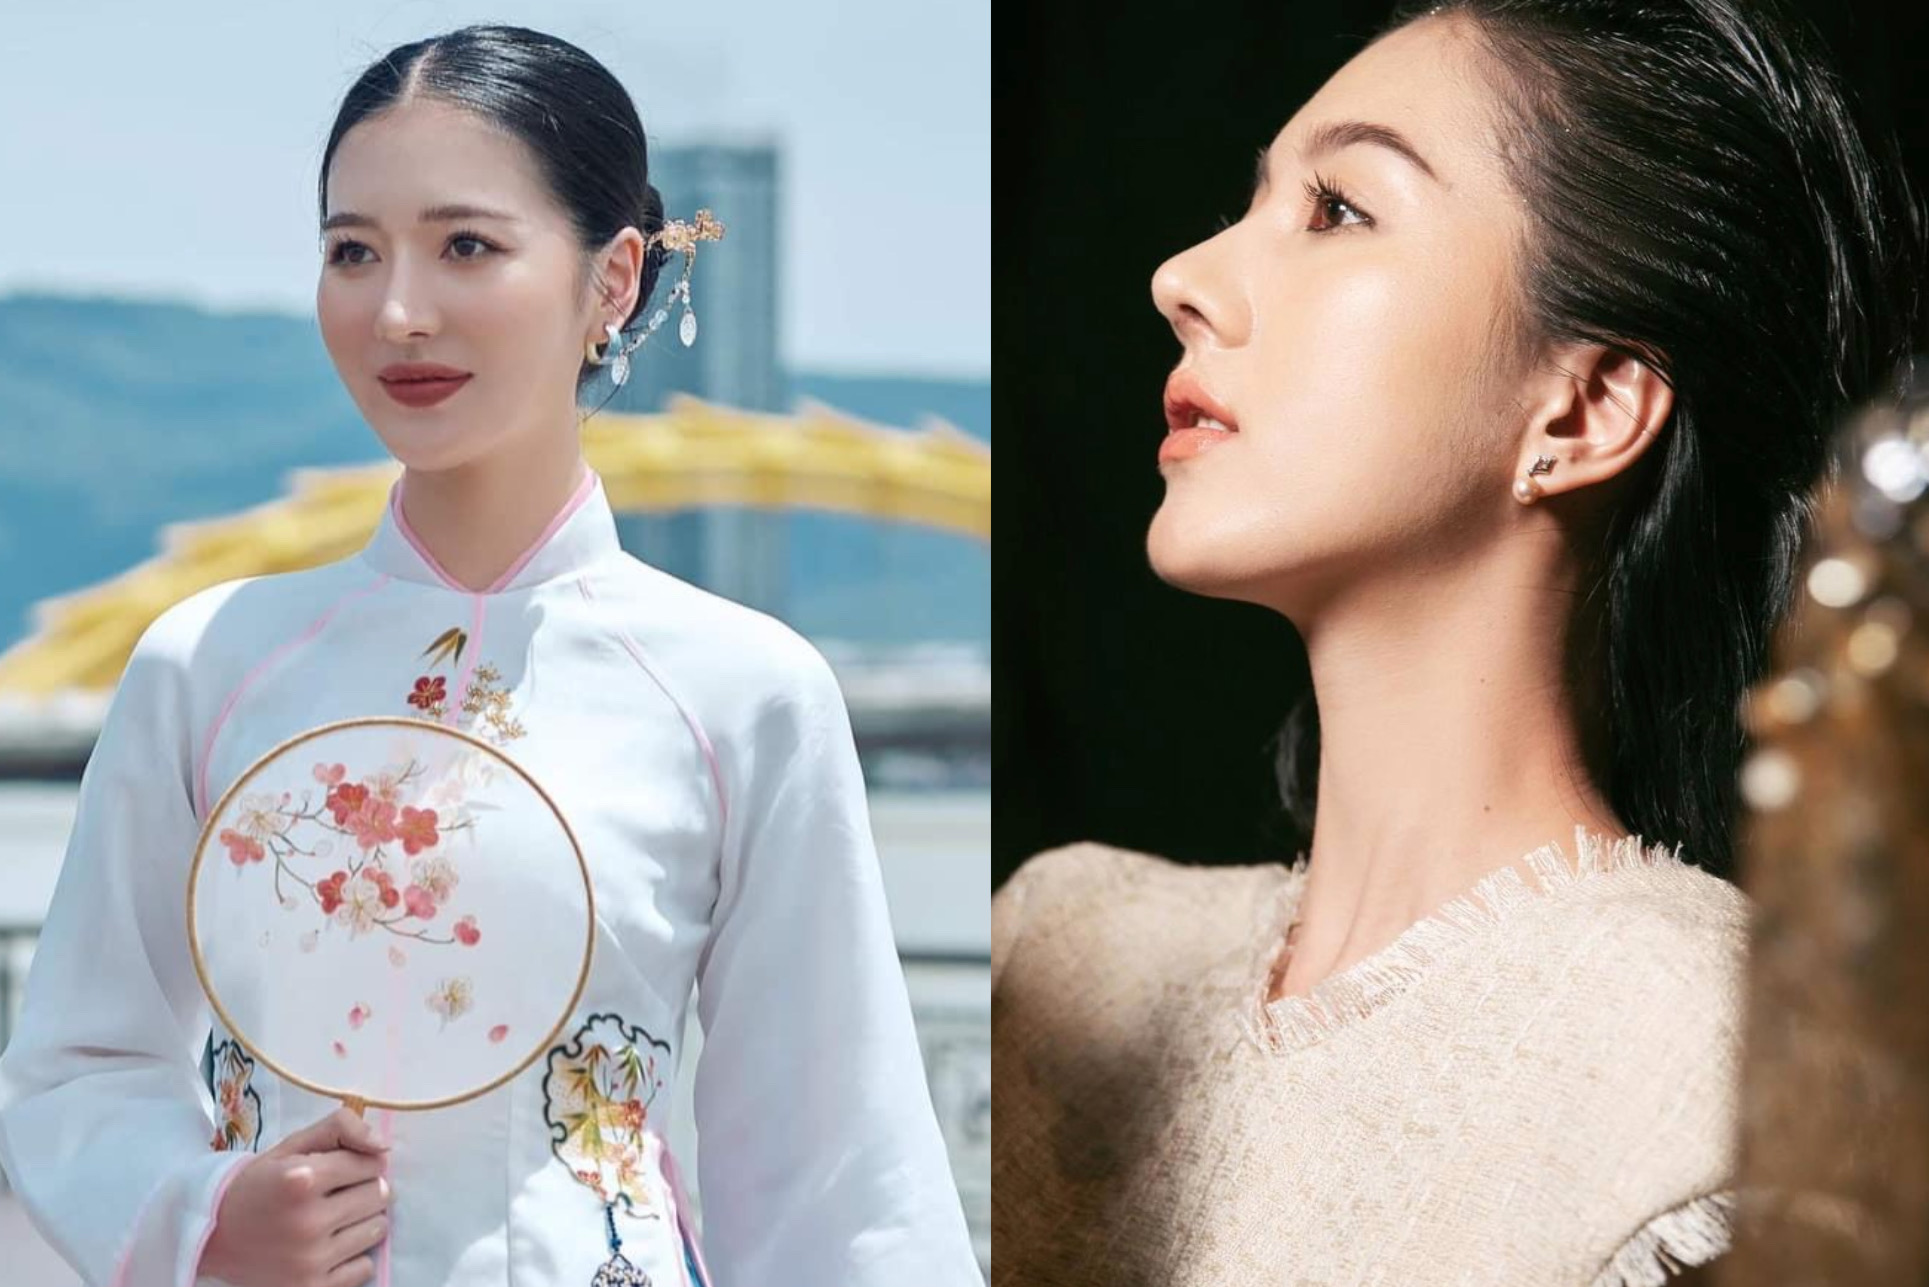 Bạn gái sinh năm 2000 khiến Hồ Quang Hiếu muốn kết hôn sau 3 tháng hẹn hò: Sở hữu chiều cao khủng 1m8, visual không kém hoa hậu - Ảnh 2.